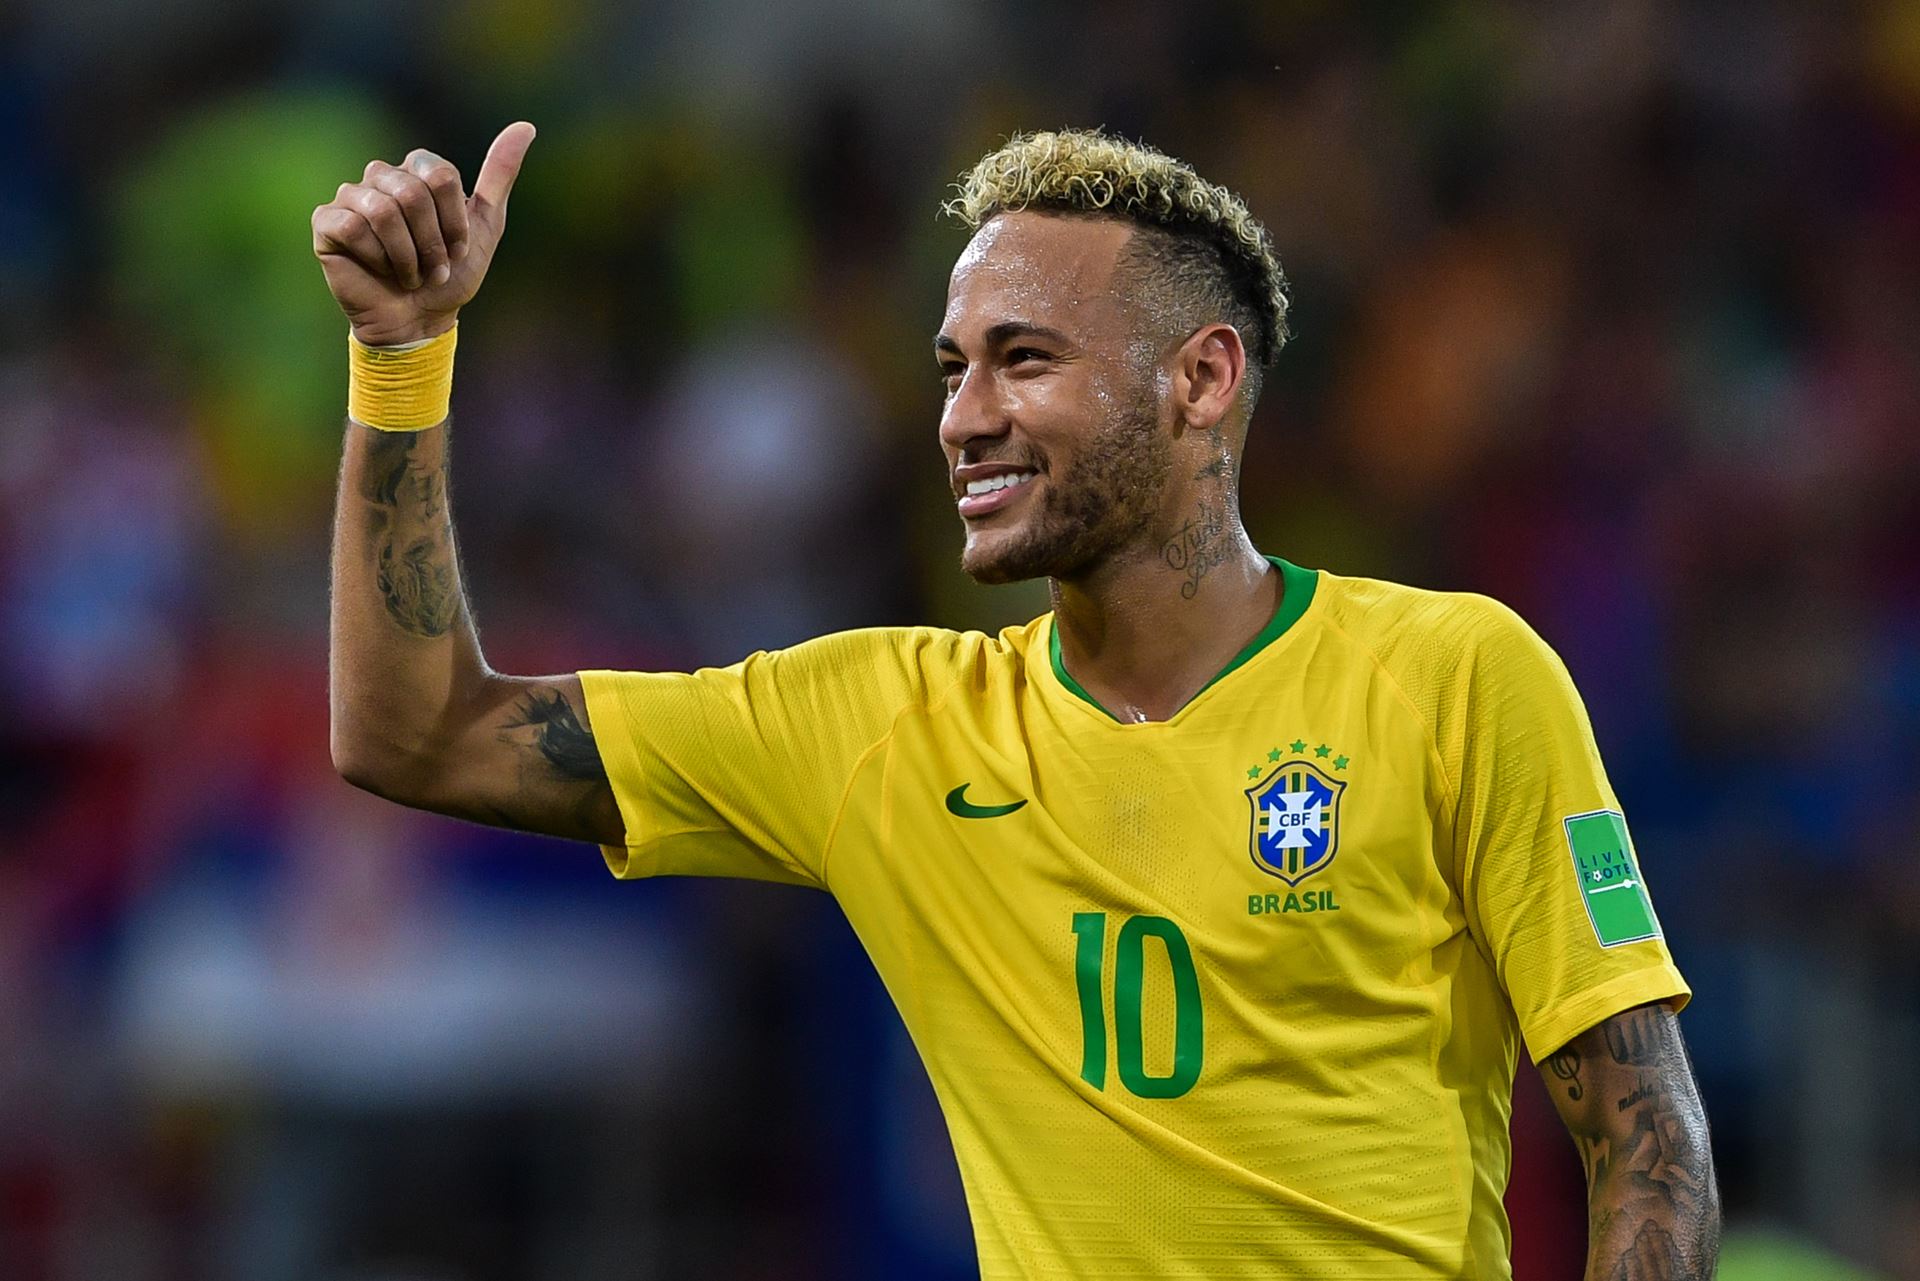 Neymar Melhor do Mundo? Veja os números incríveis da carreira